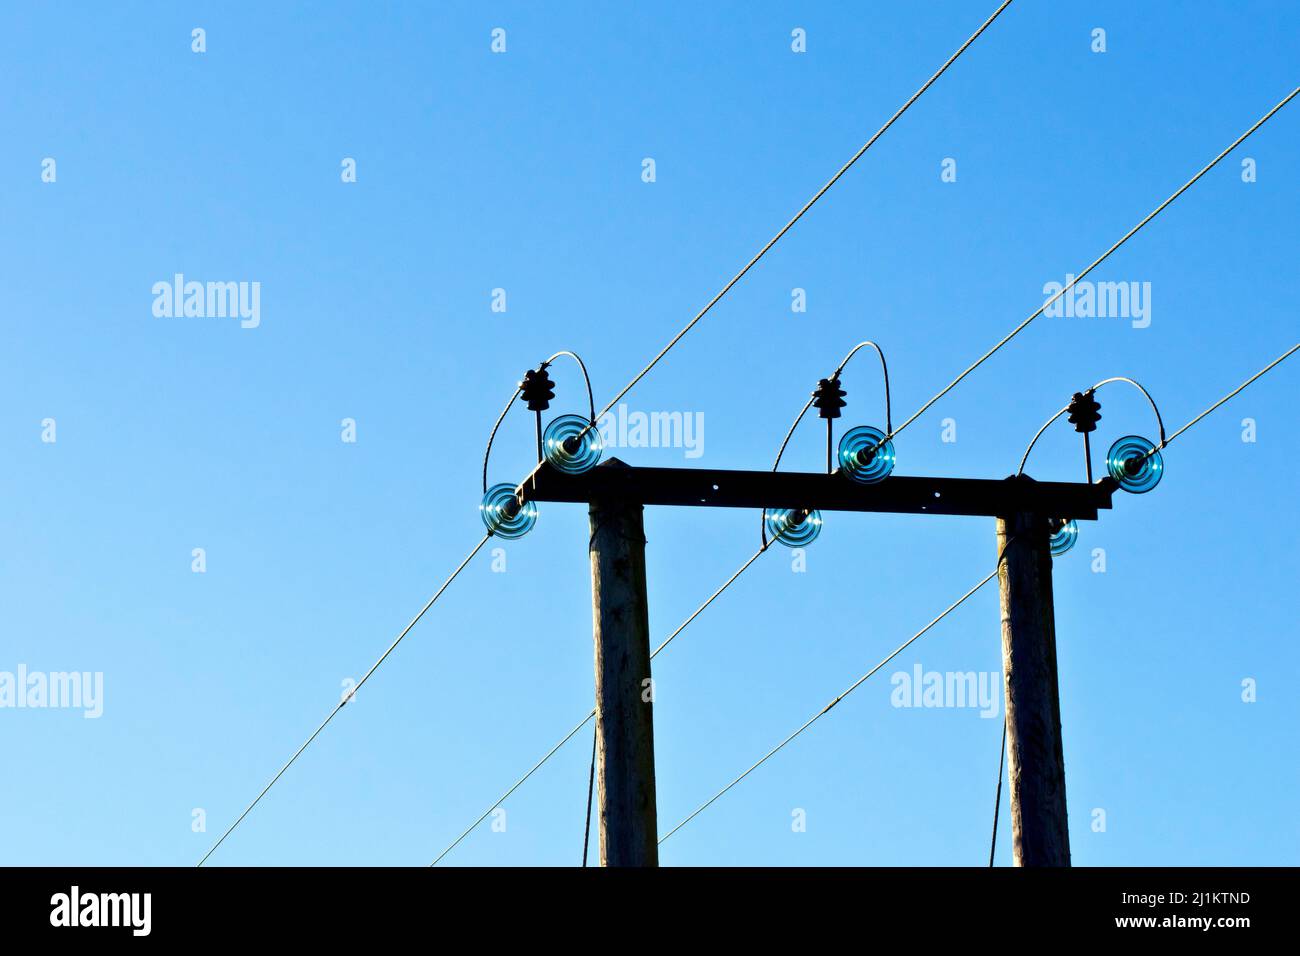 Ein ländlicher hölzerner Strommast, der drei Hochspannungsleitungen über ein Feld führt, schoss zurück, beleuchtet vor einem strahlend blauen Himmel. Stockfoto